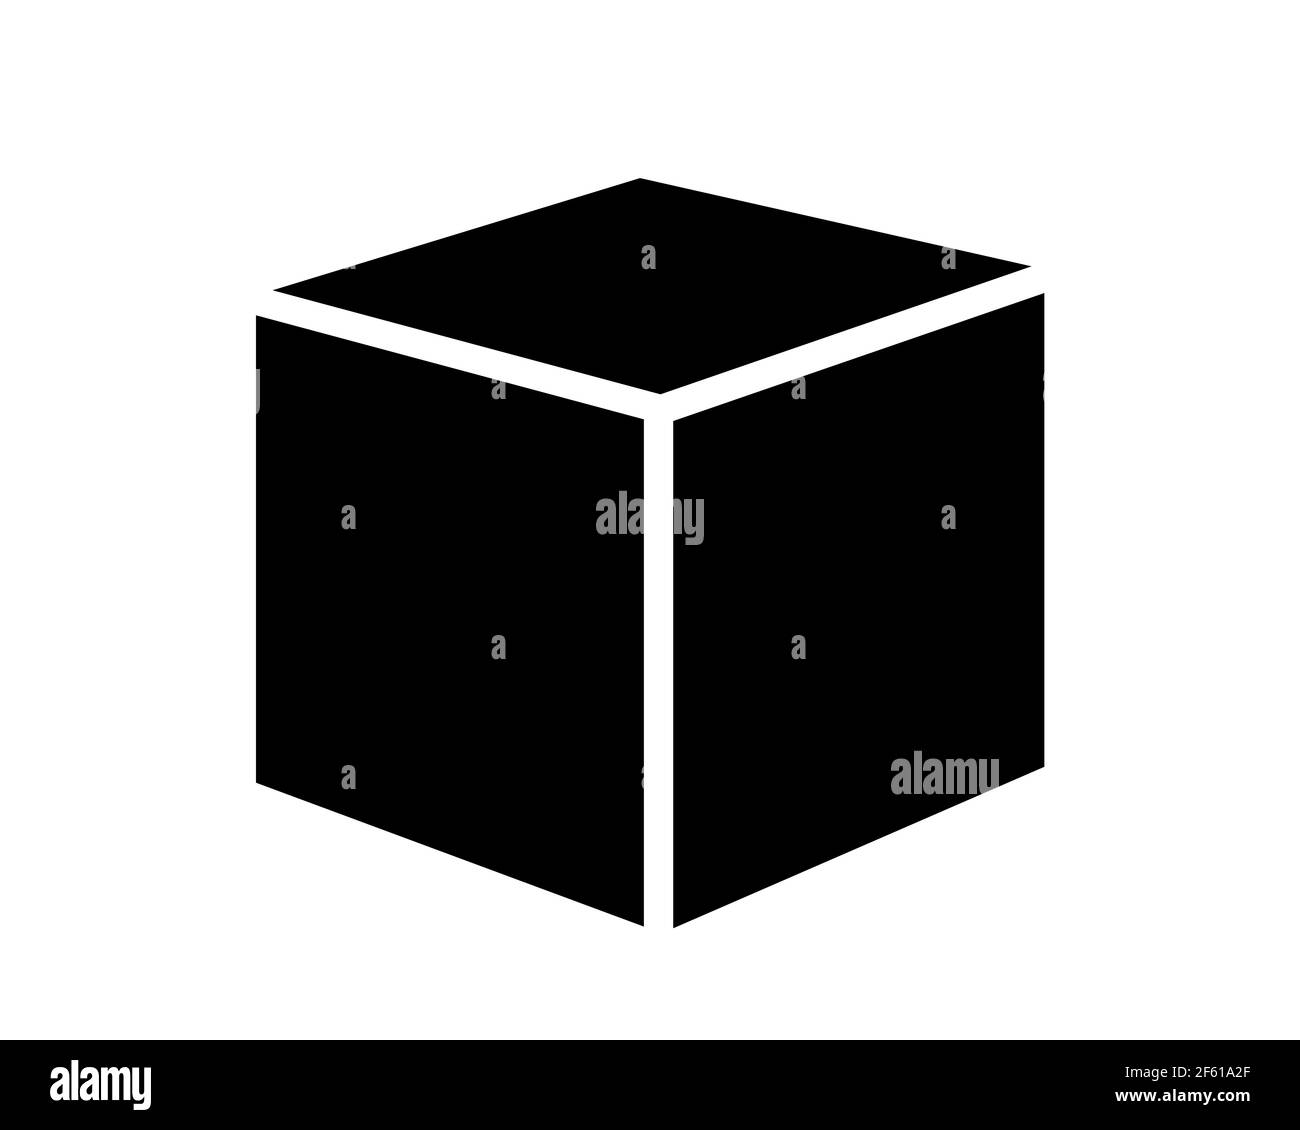 Cuadro y cubo como objeto dimensional sobre fondo blanco. Ilustración vectorial aislada sobre blanco. Foto de stock